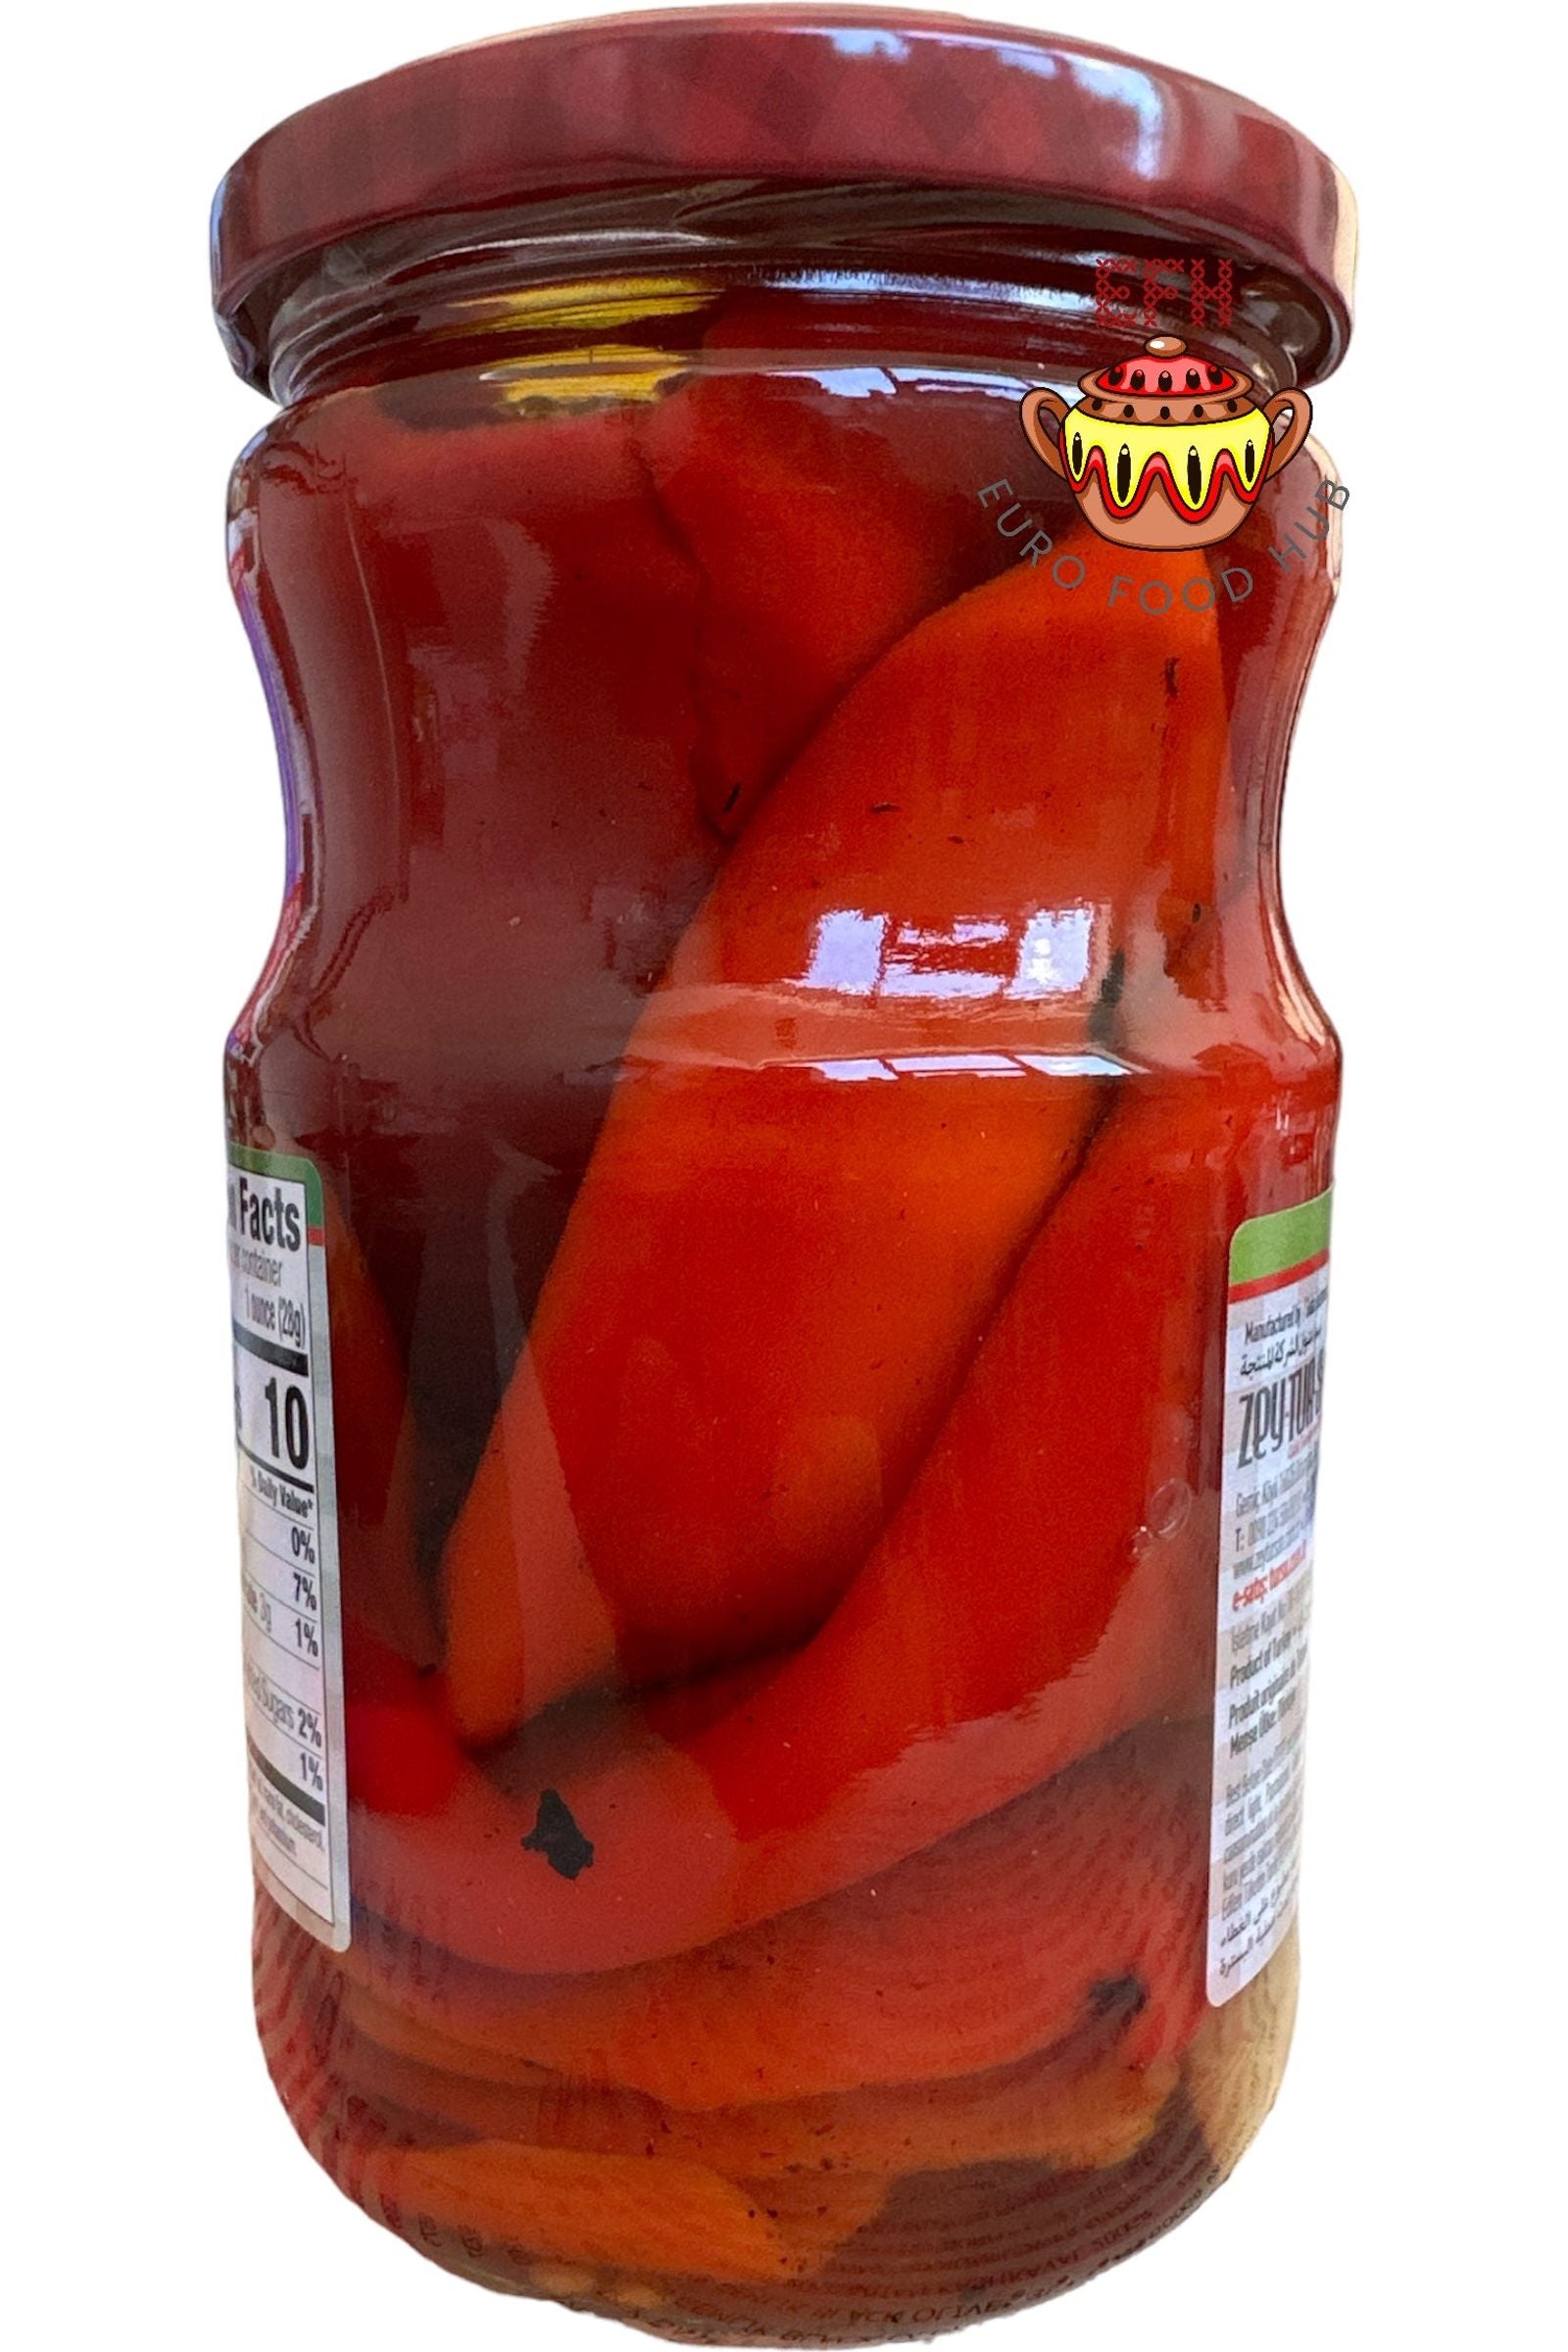 Roasted Red Pepper - BERRAK - 680g